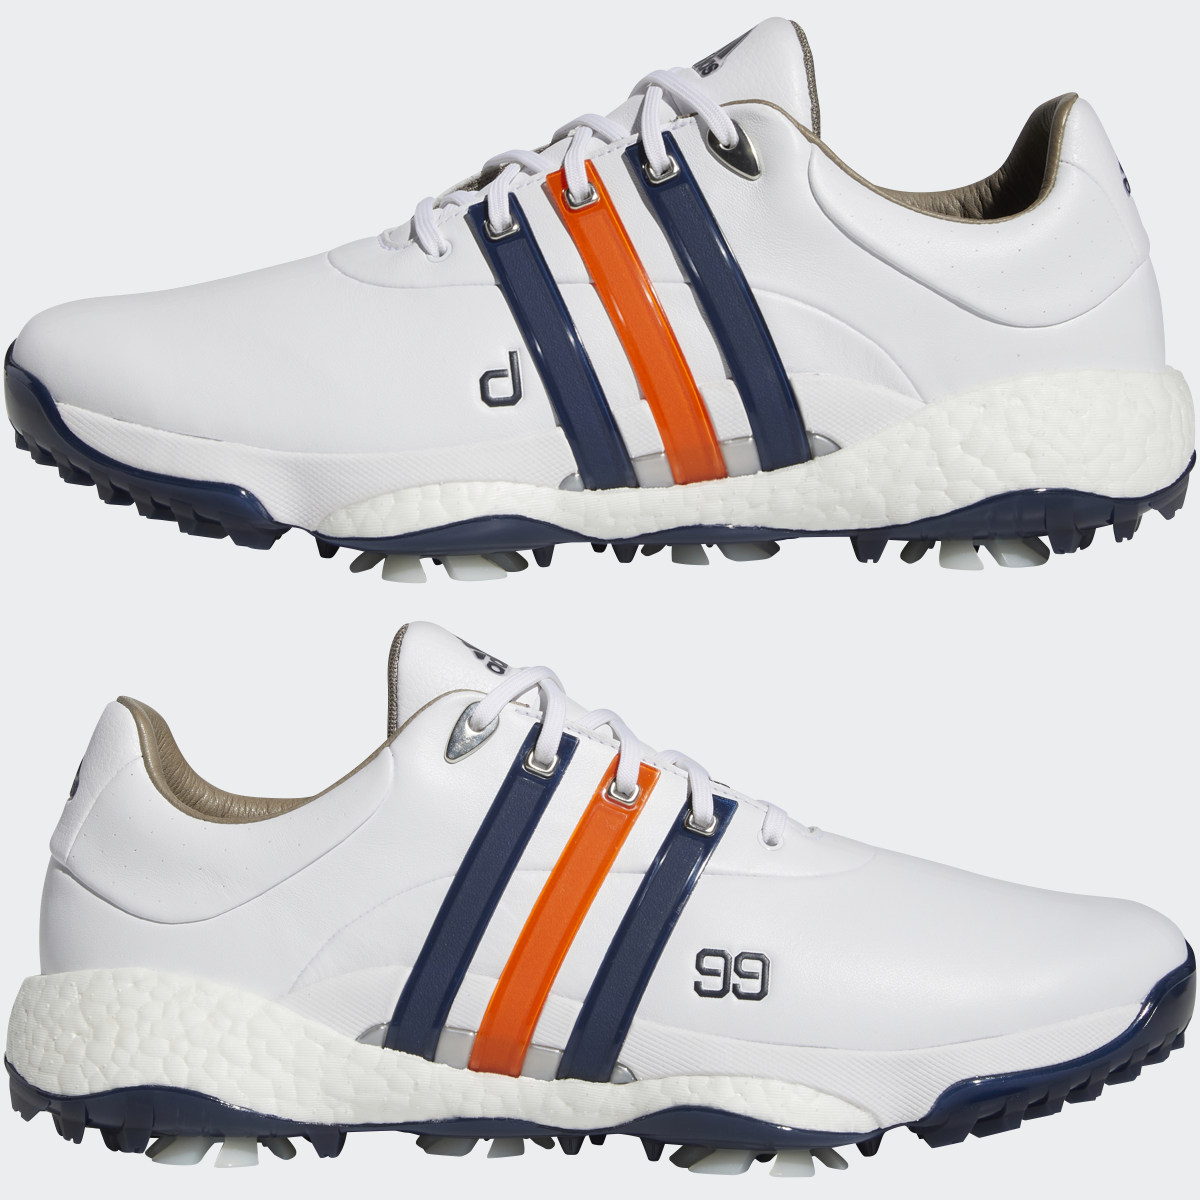 Adidas DJ Gretzky Tour360 22 Golf Shoes. 14